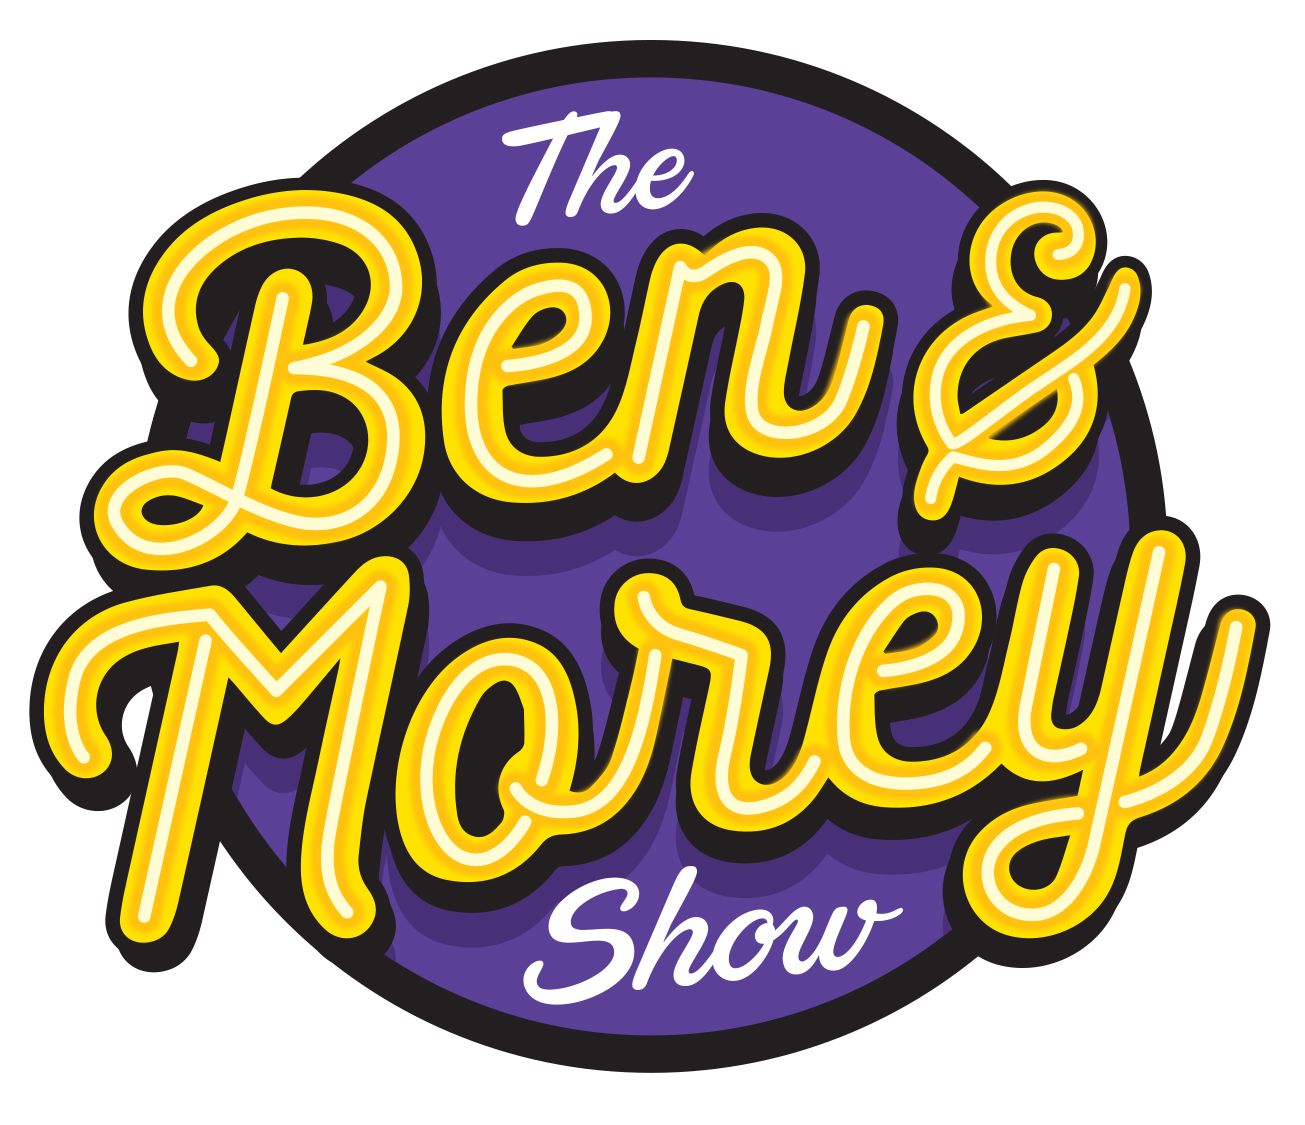 The Ben & Morey Show